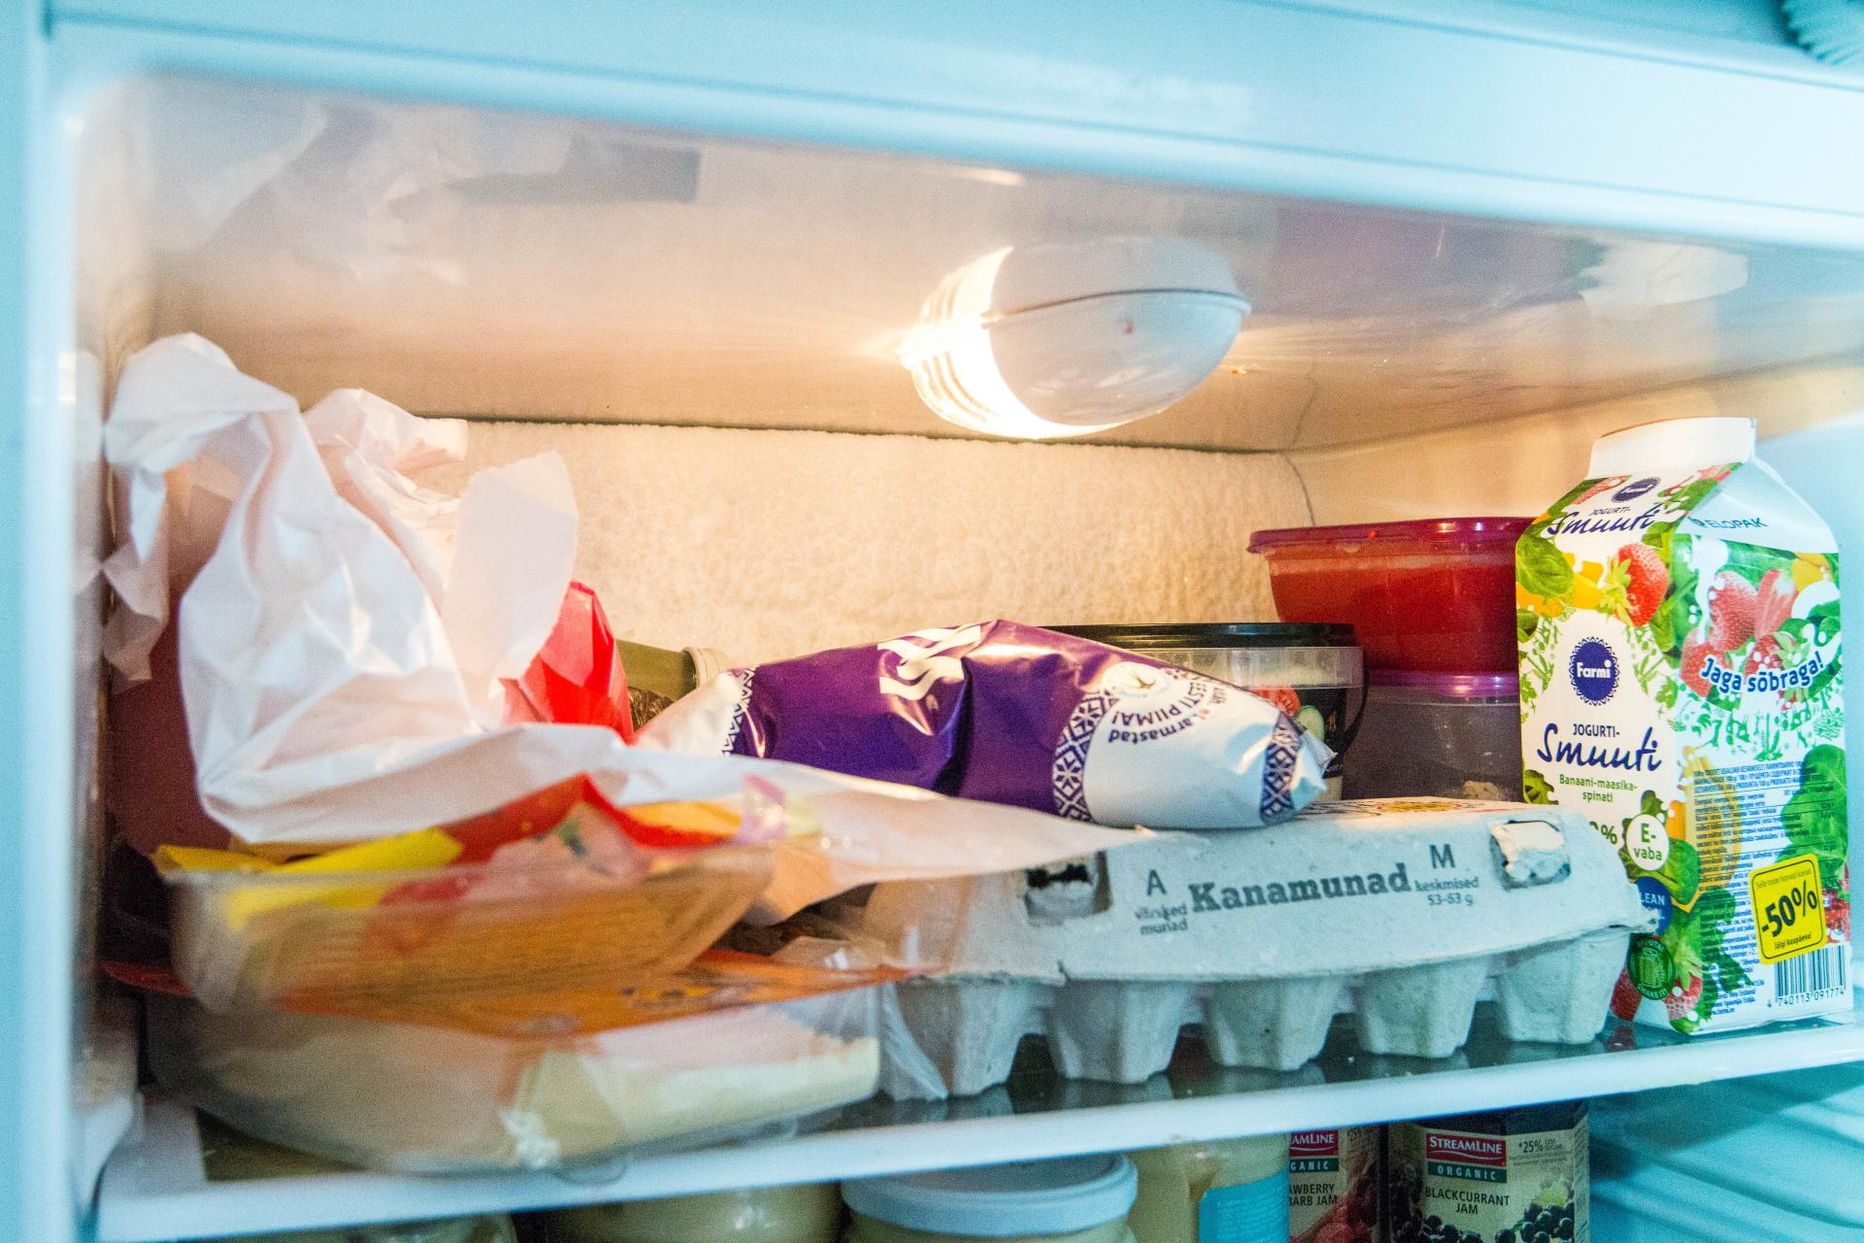 Vargad viisid külmkapist toidukraami ja alkohoolseid jooke. Pildil olev toidukraam ei ole vargusega seotud.